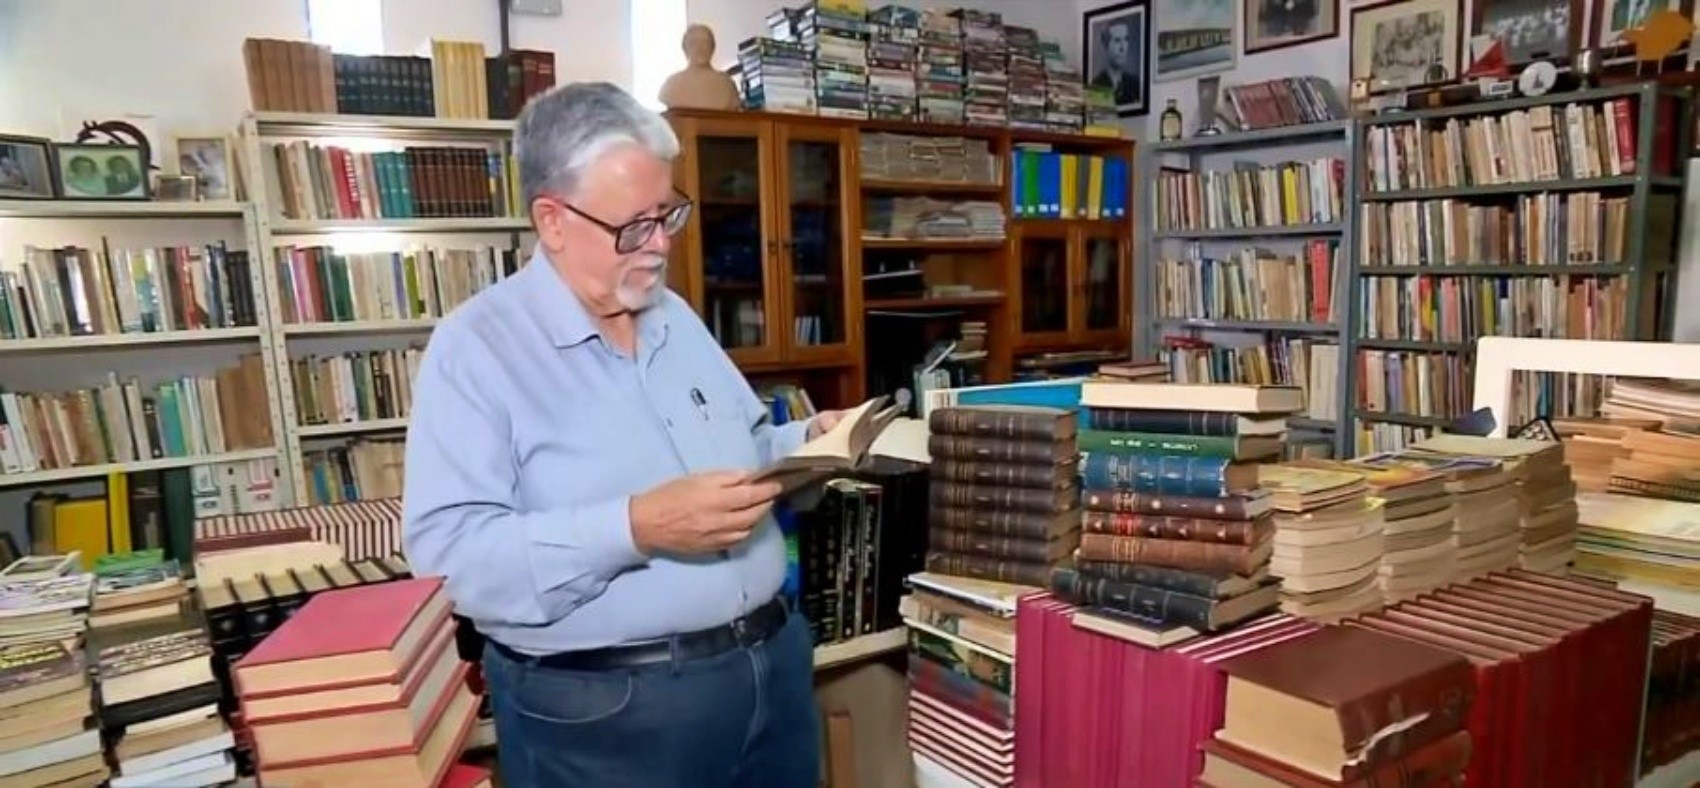 Advogado distribui acervo com 20 mil livros para bibliotecas públicas em MG: 'Caminho bom é fazer o livro circular'